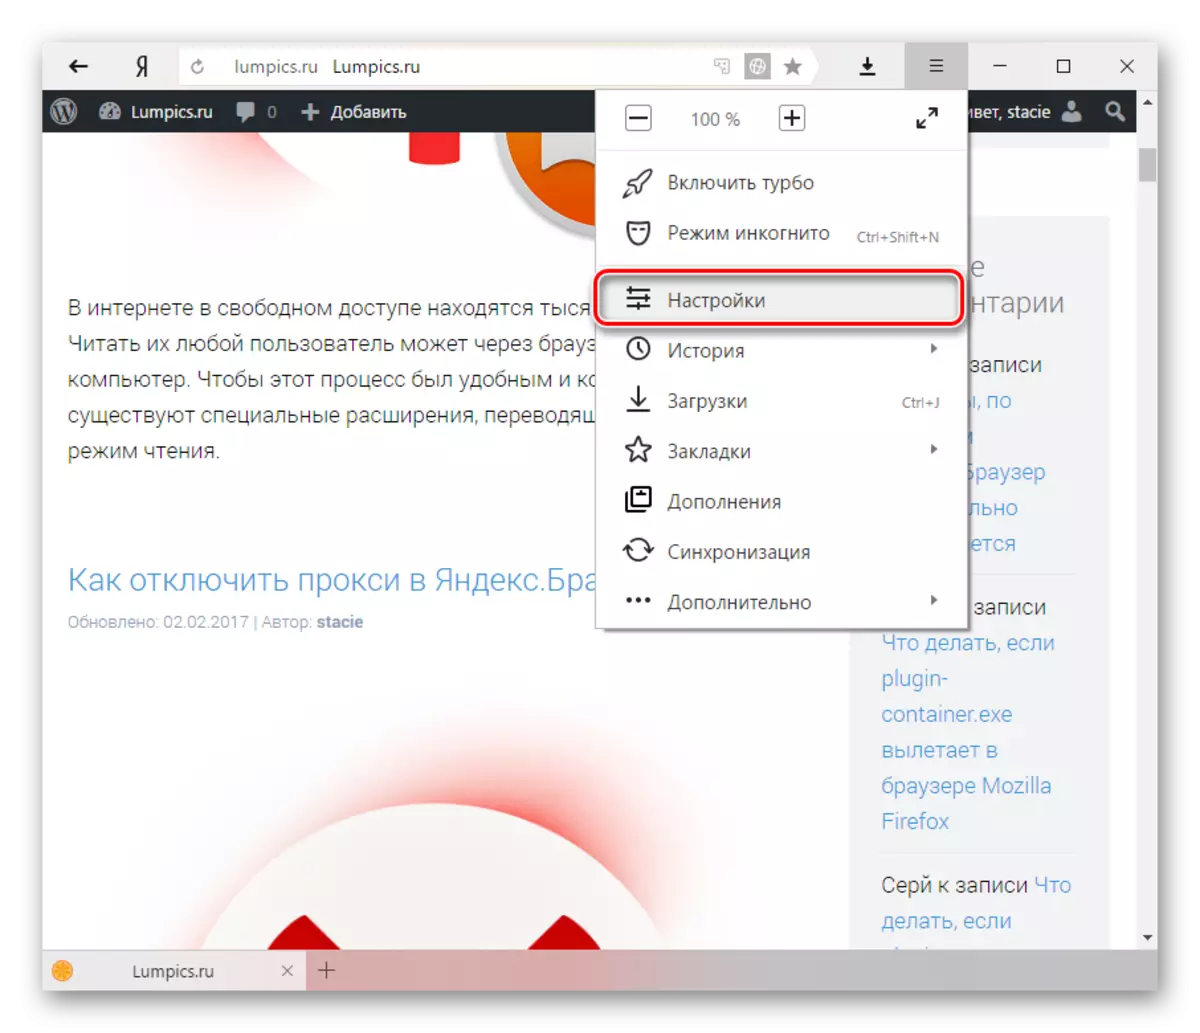 Asetukset Yandex.bauser